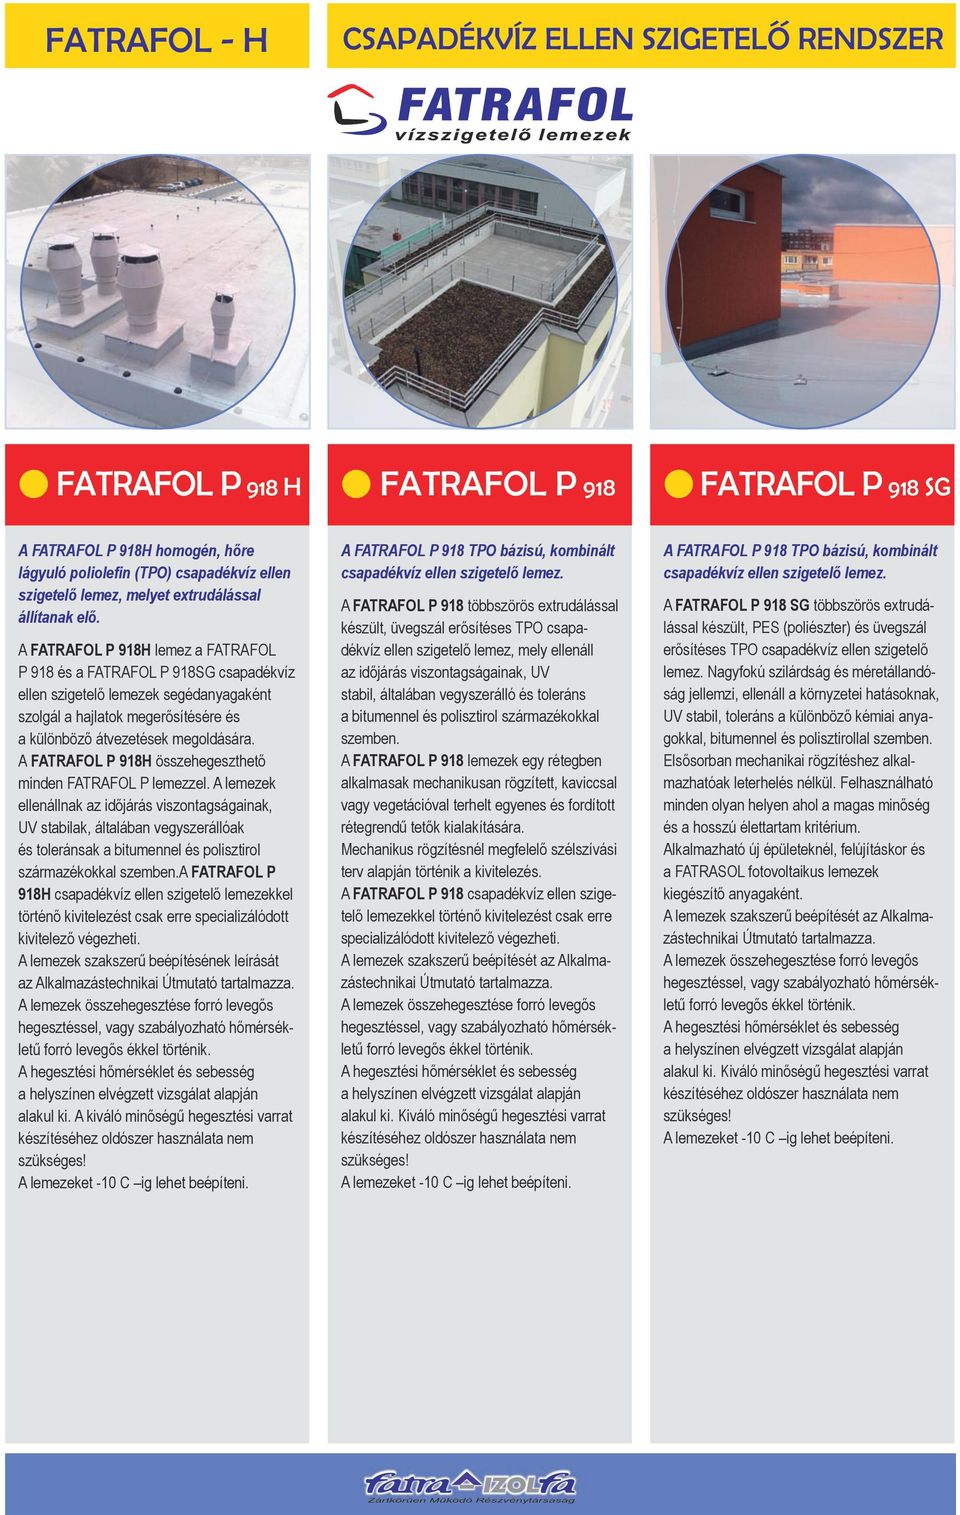 A FATRAFOL P 918H lemez a FATRAFOL P 918 és a FATRAFOL P 918SG csapadékvíz ellen szigetelő lemezek segédanyagaként szolgál a hajlatok megerősítésére és a különböző átvezetések megoldására.